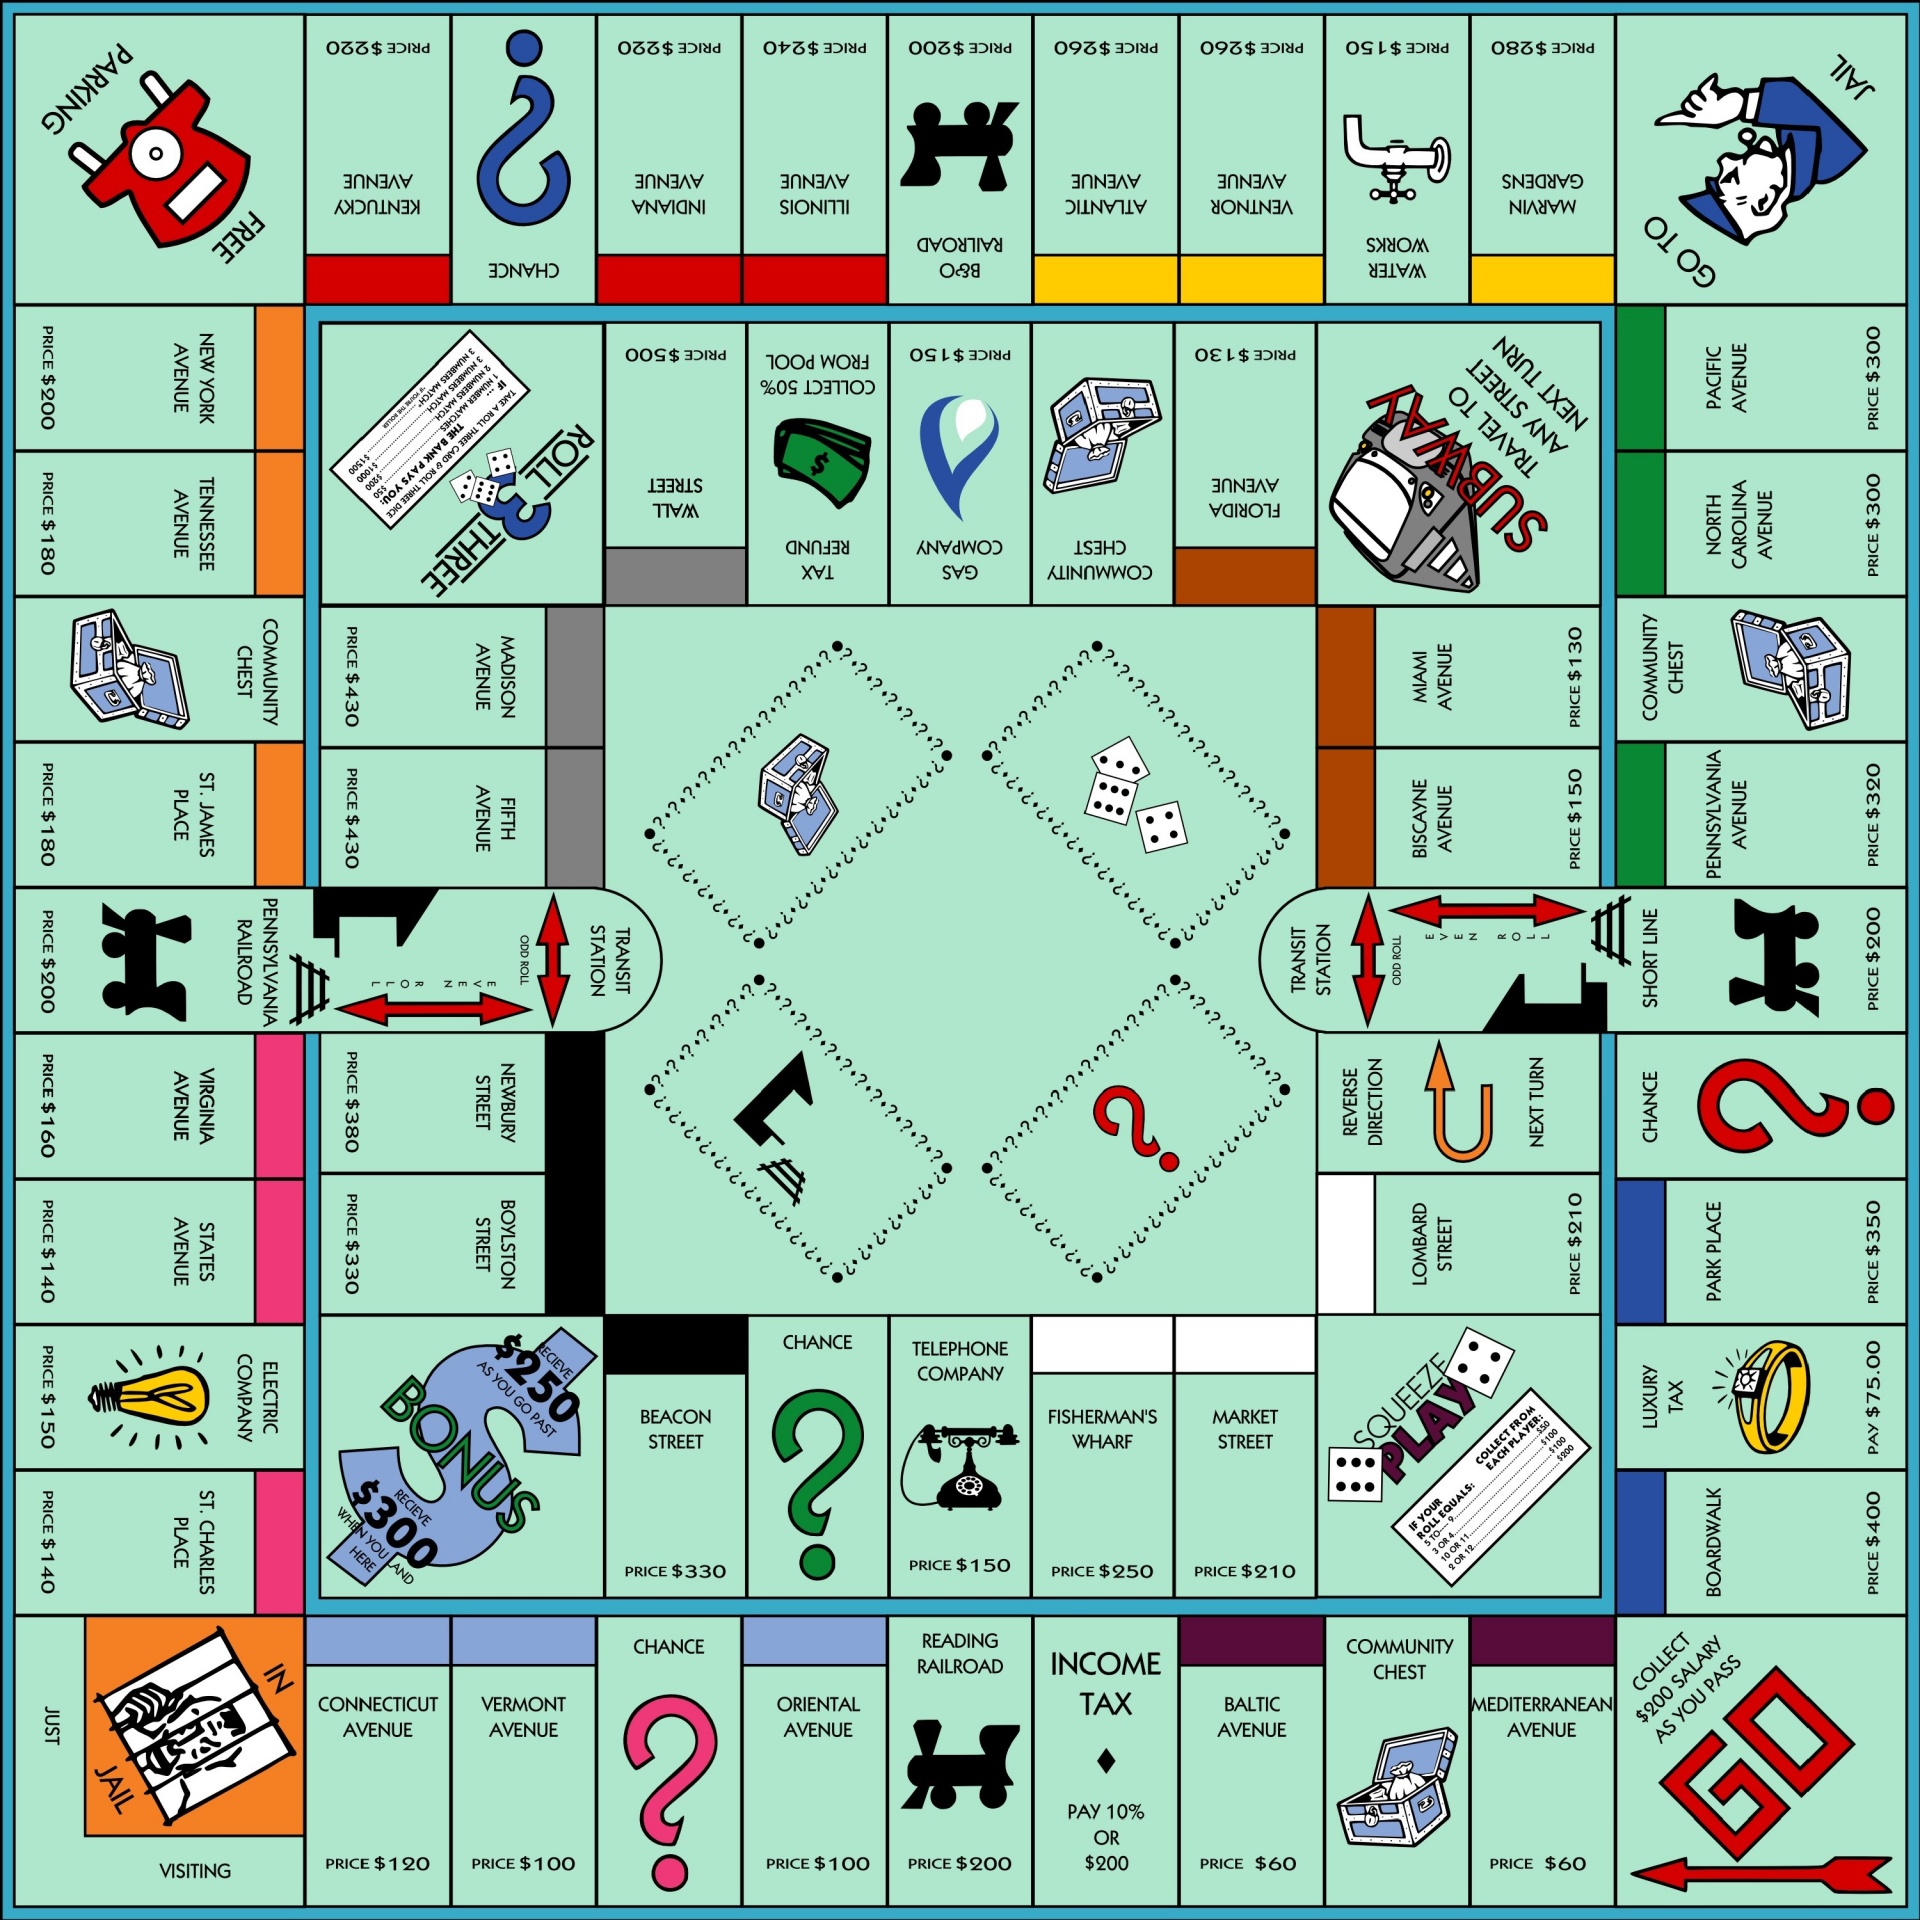 Juego de mesa Monopoly